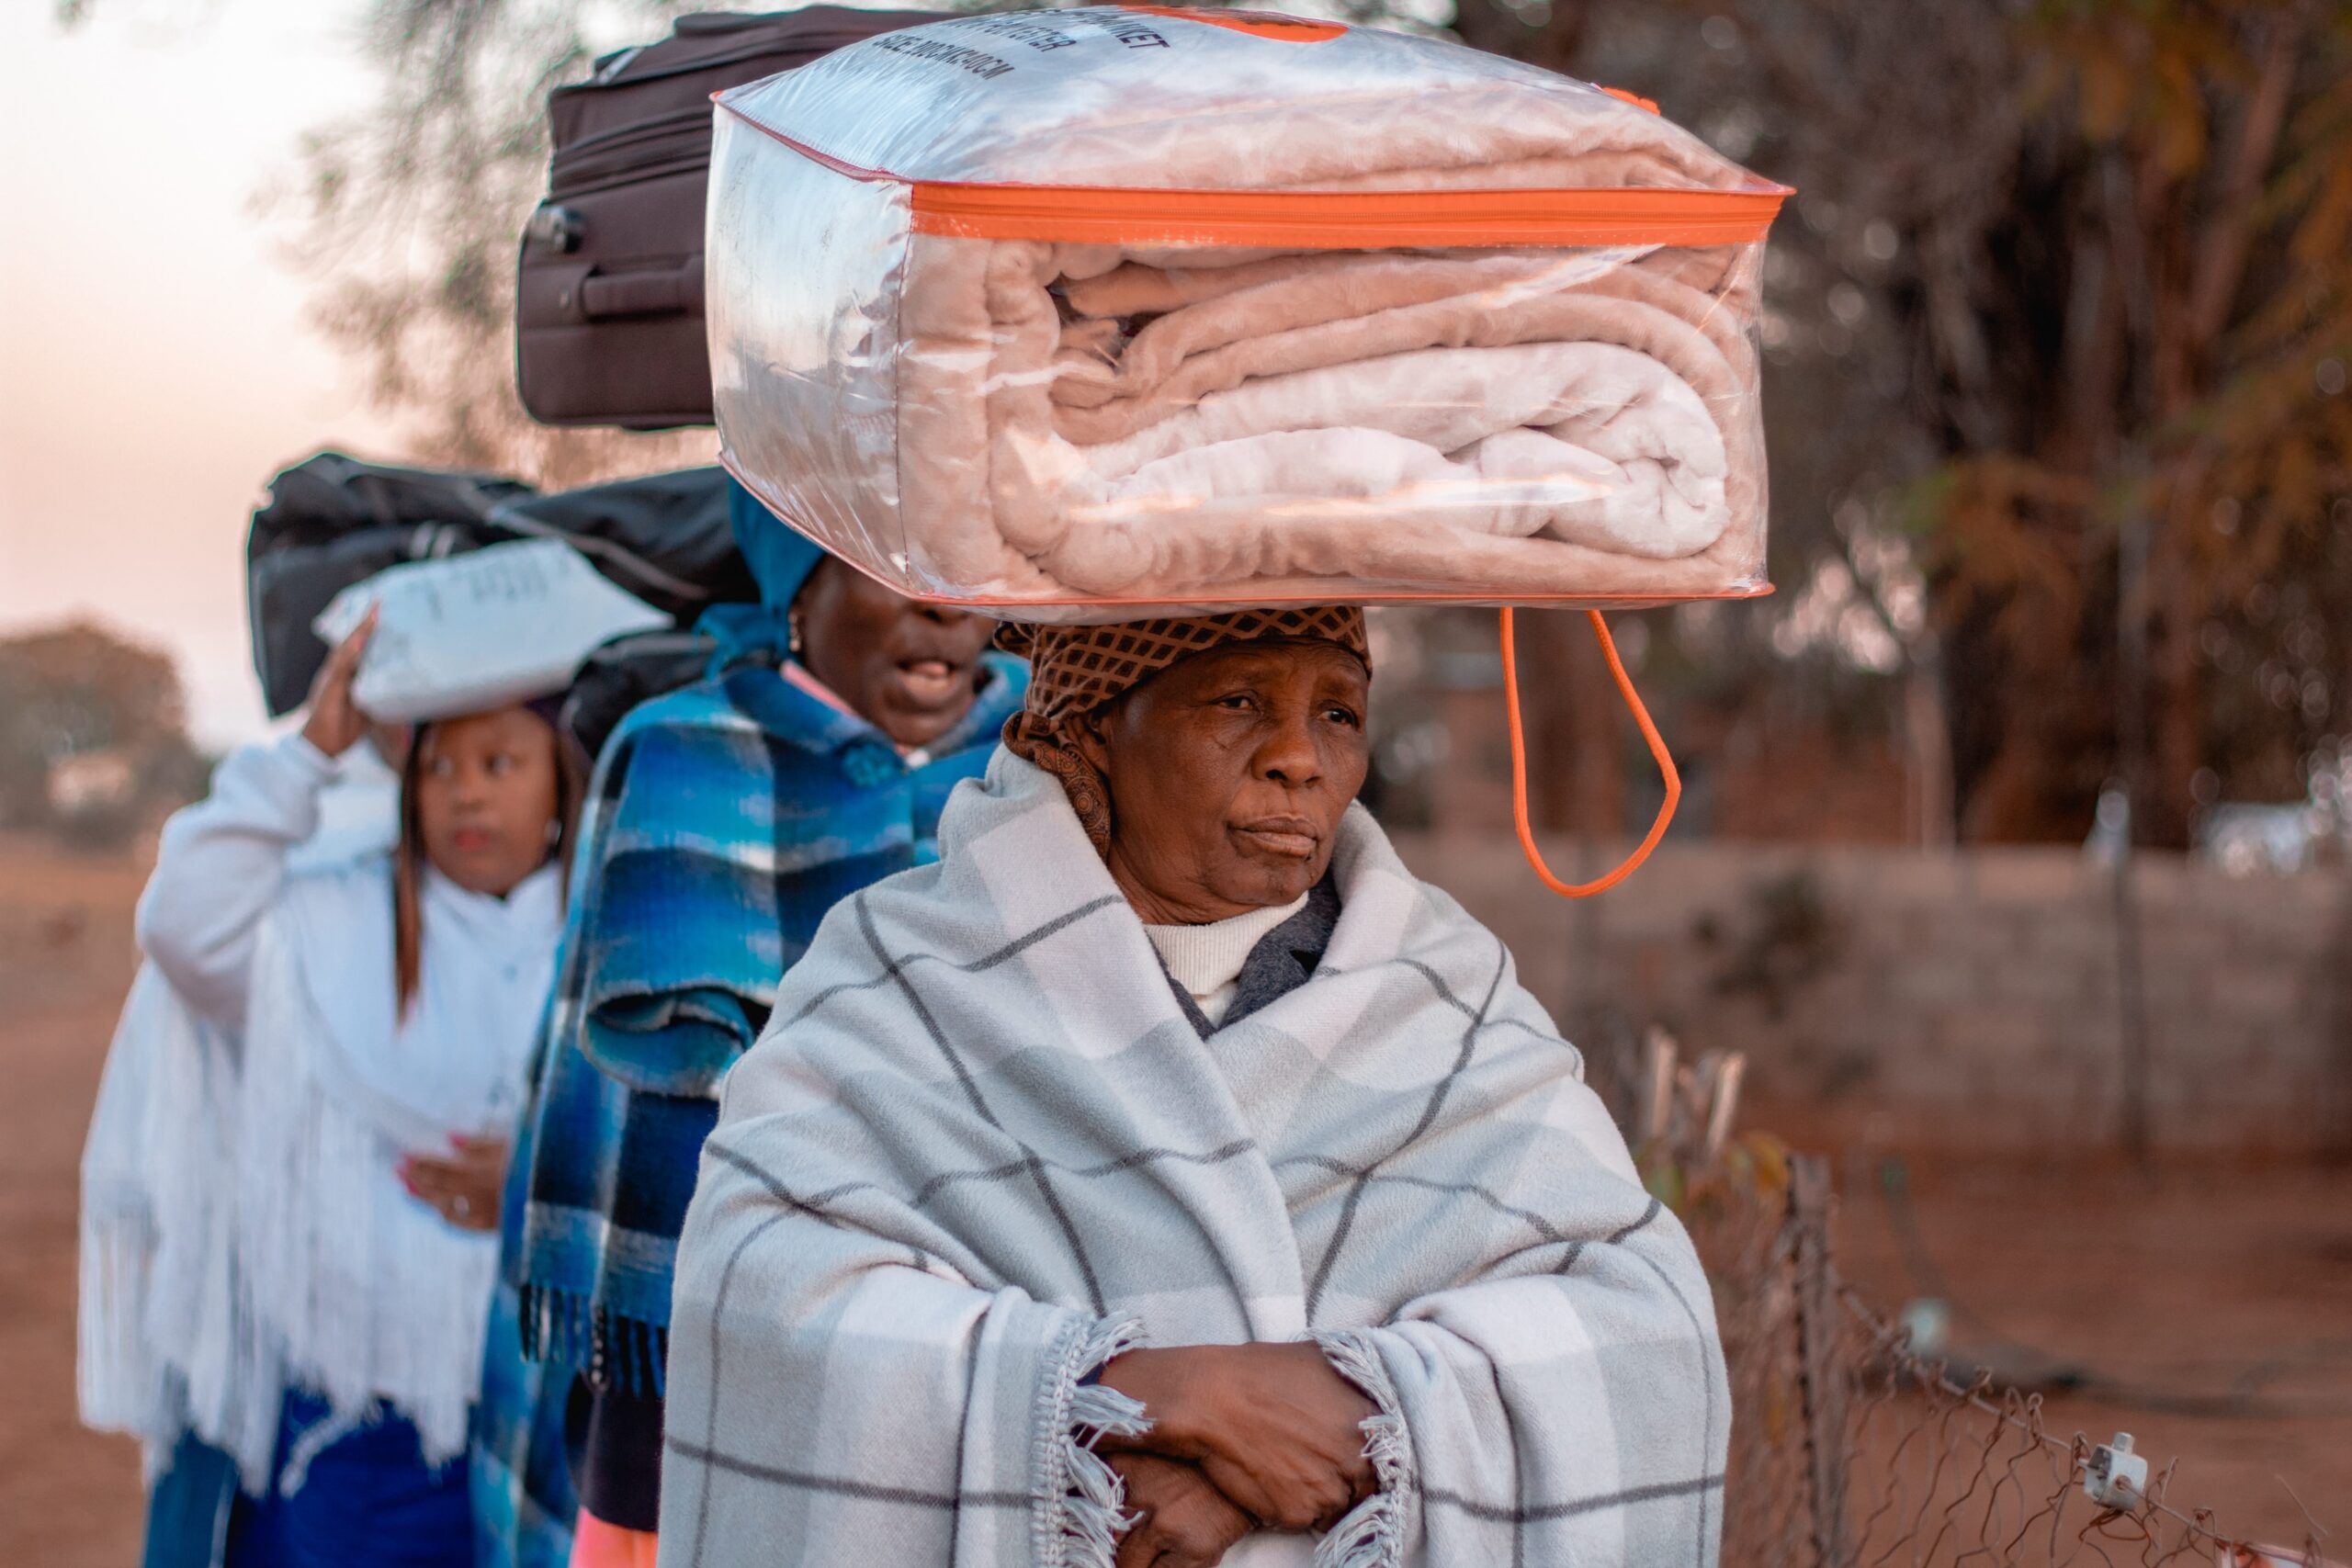 Palapye, Botswana